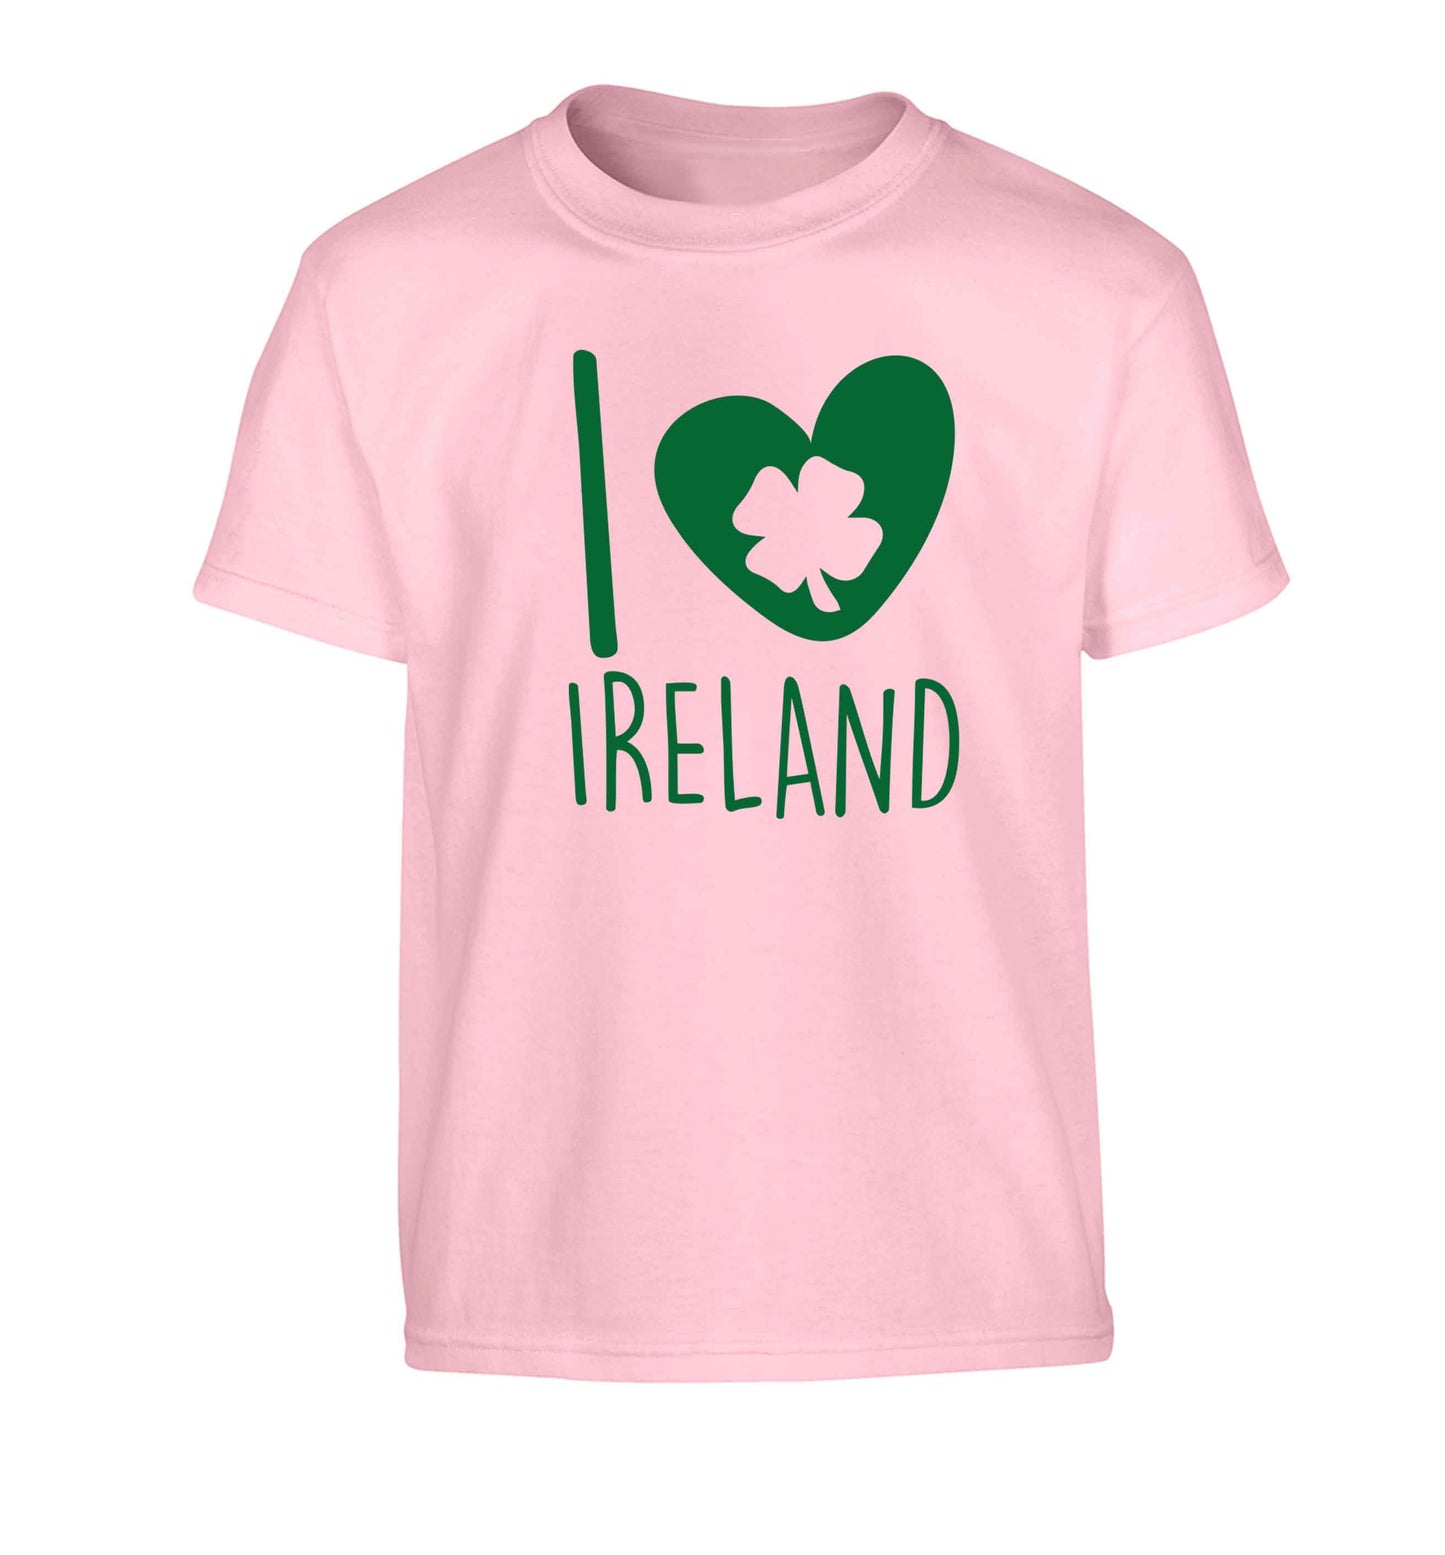 I love Ireland Children's light pink Tshirt 12-13 Years